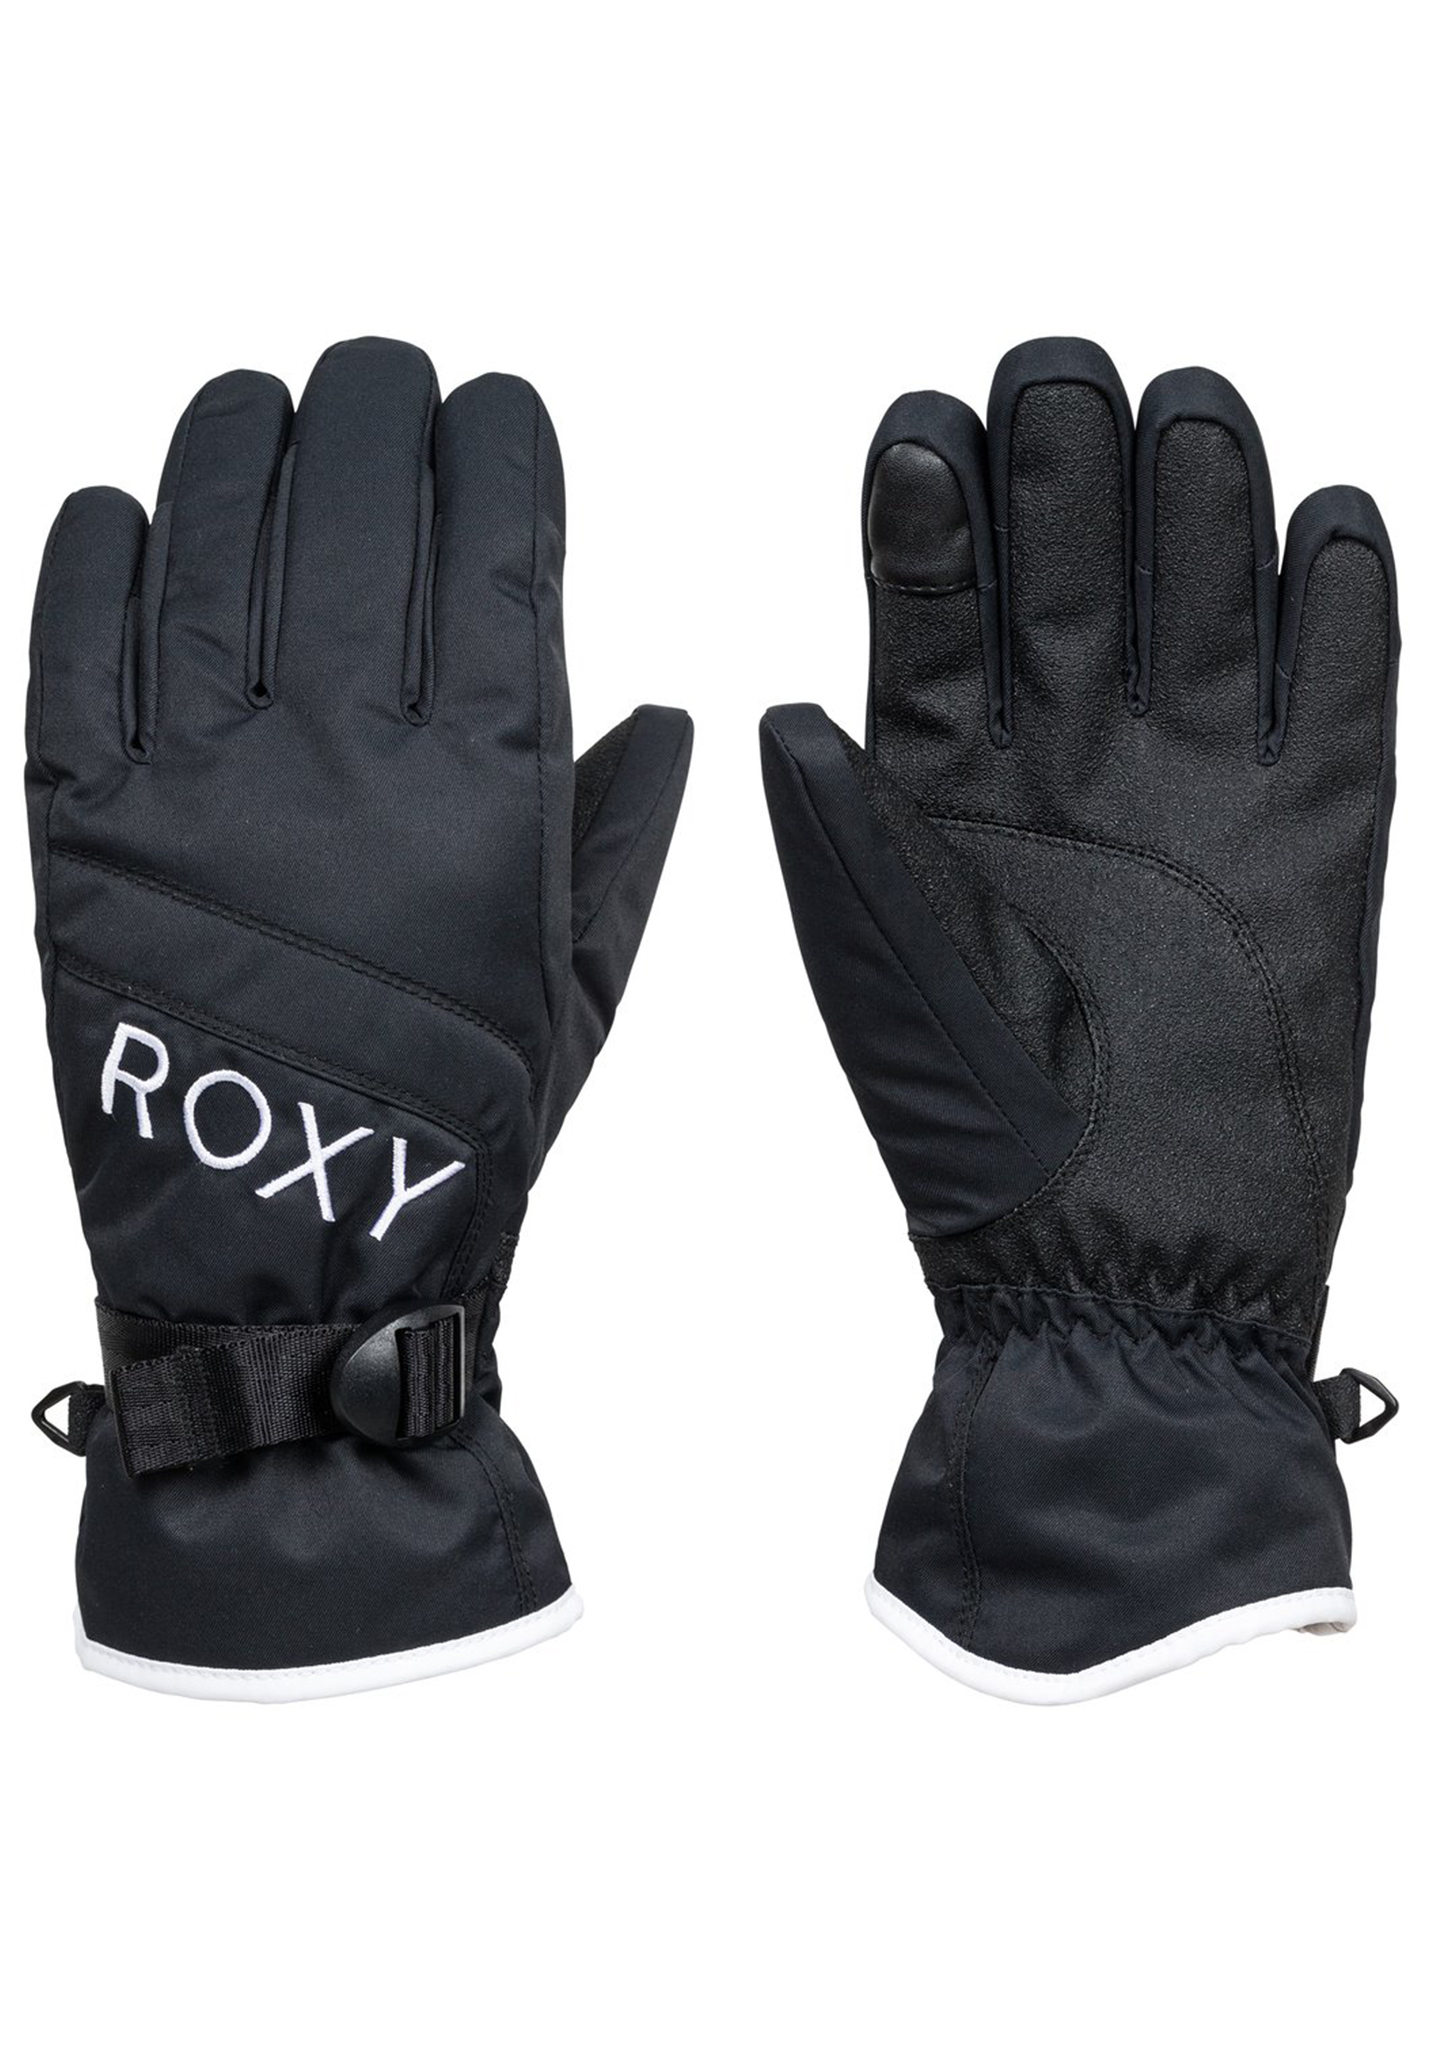 Roxy Jetty Solid Snowboard Handschuhe true black S